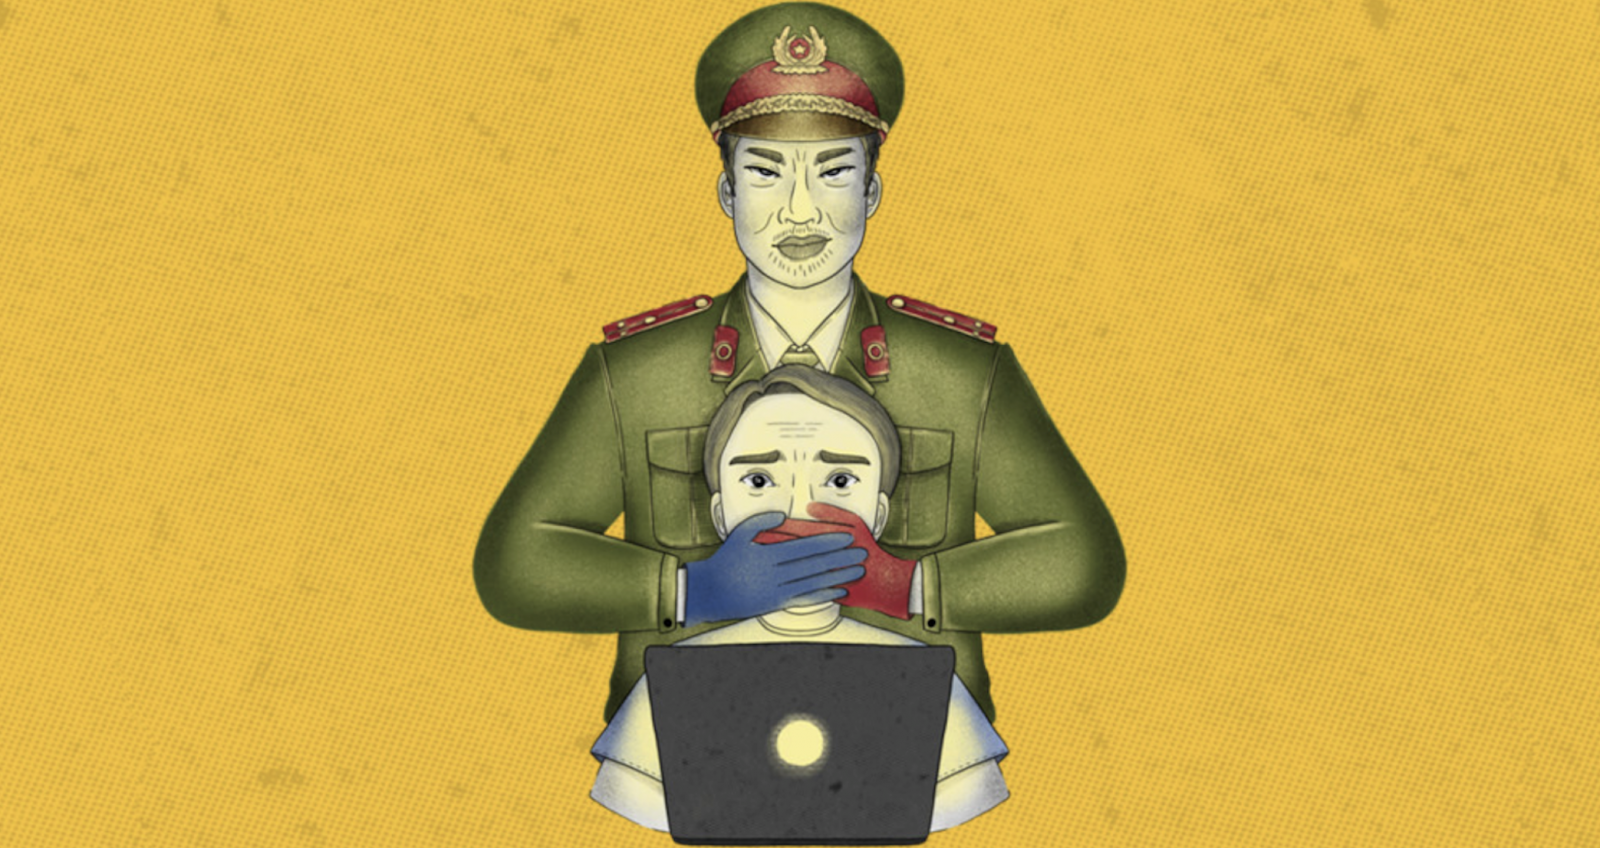 國際特赦組織《讓我們呼吸!》報告的的封面插圖，該報告調查了Facebook在越南的業務以及越 南政府對言論自由的打壓